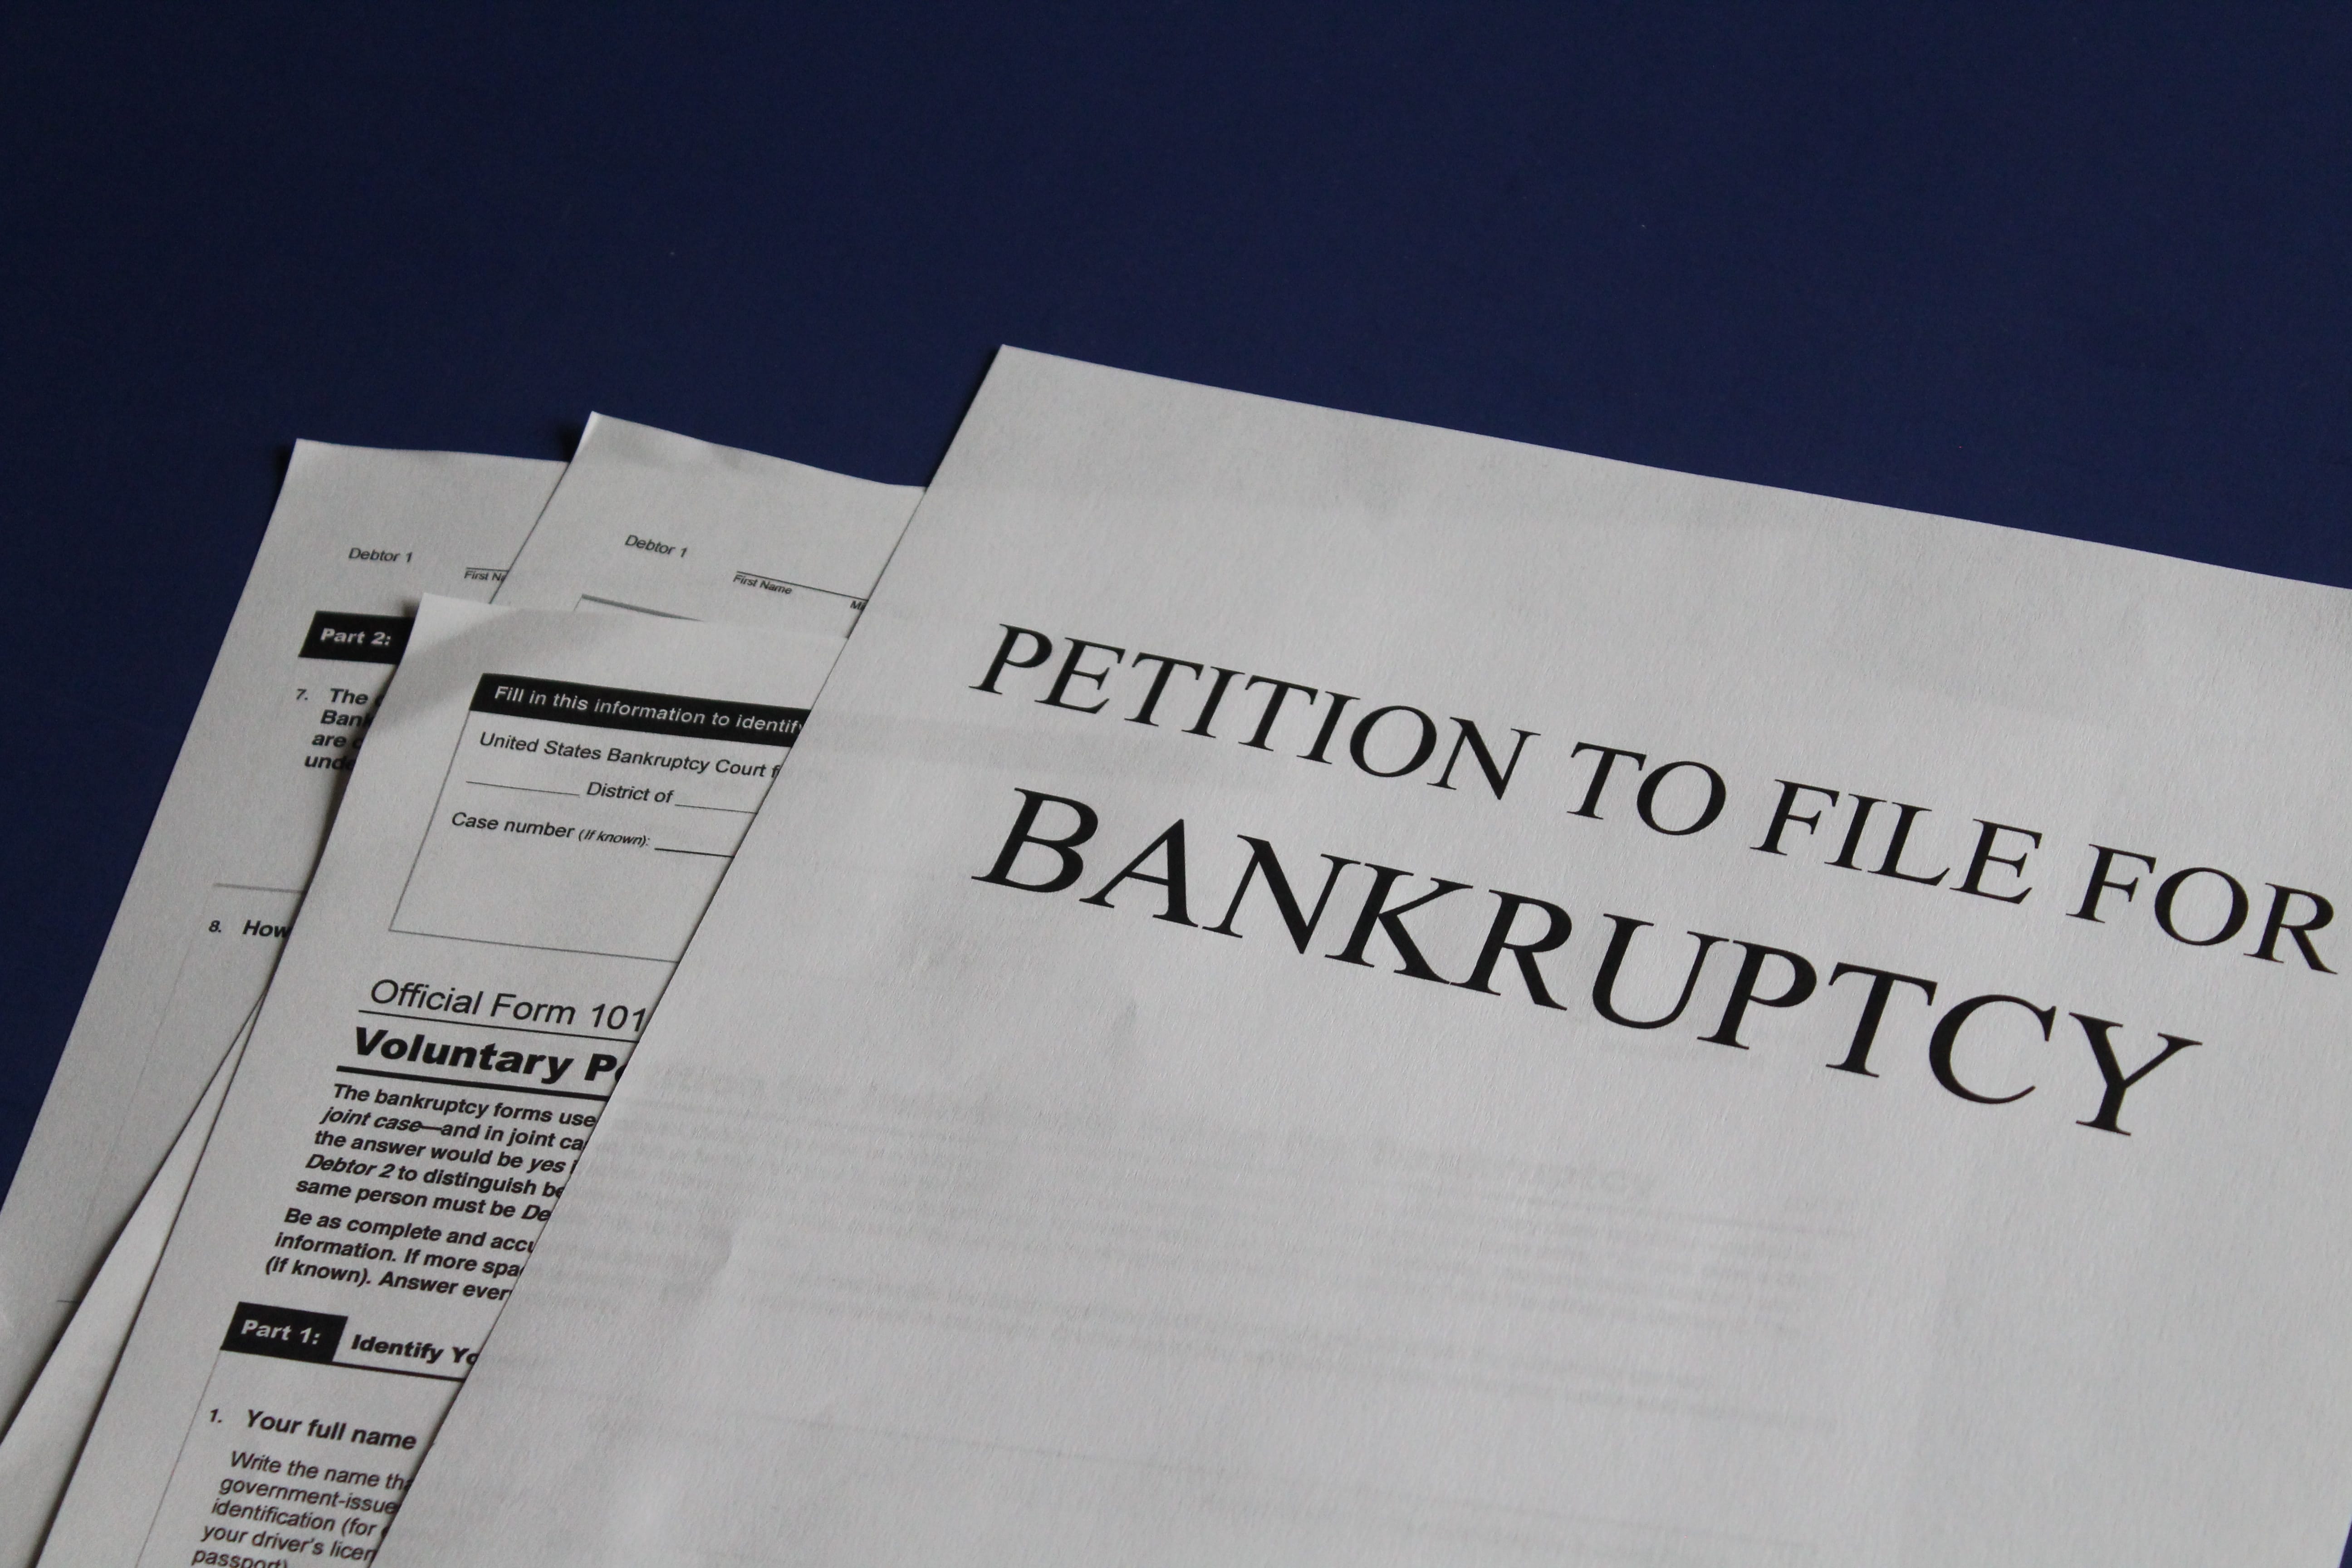 Petition to file for bankruptcy; image by Melinda Gimpel, via Unsplash.com.